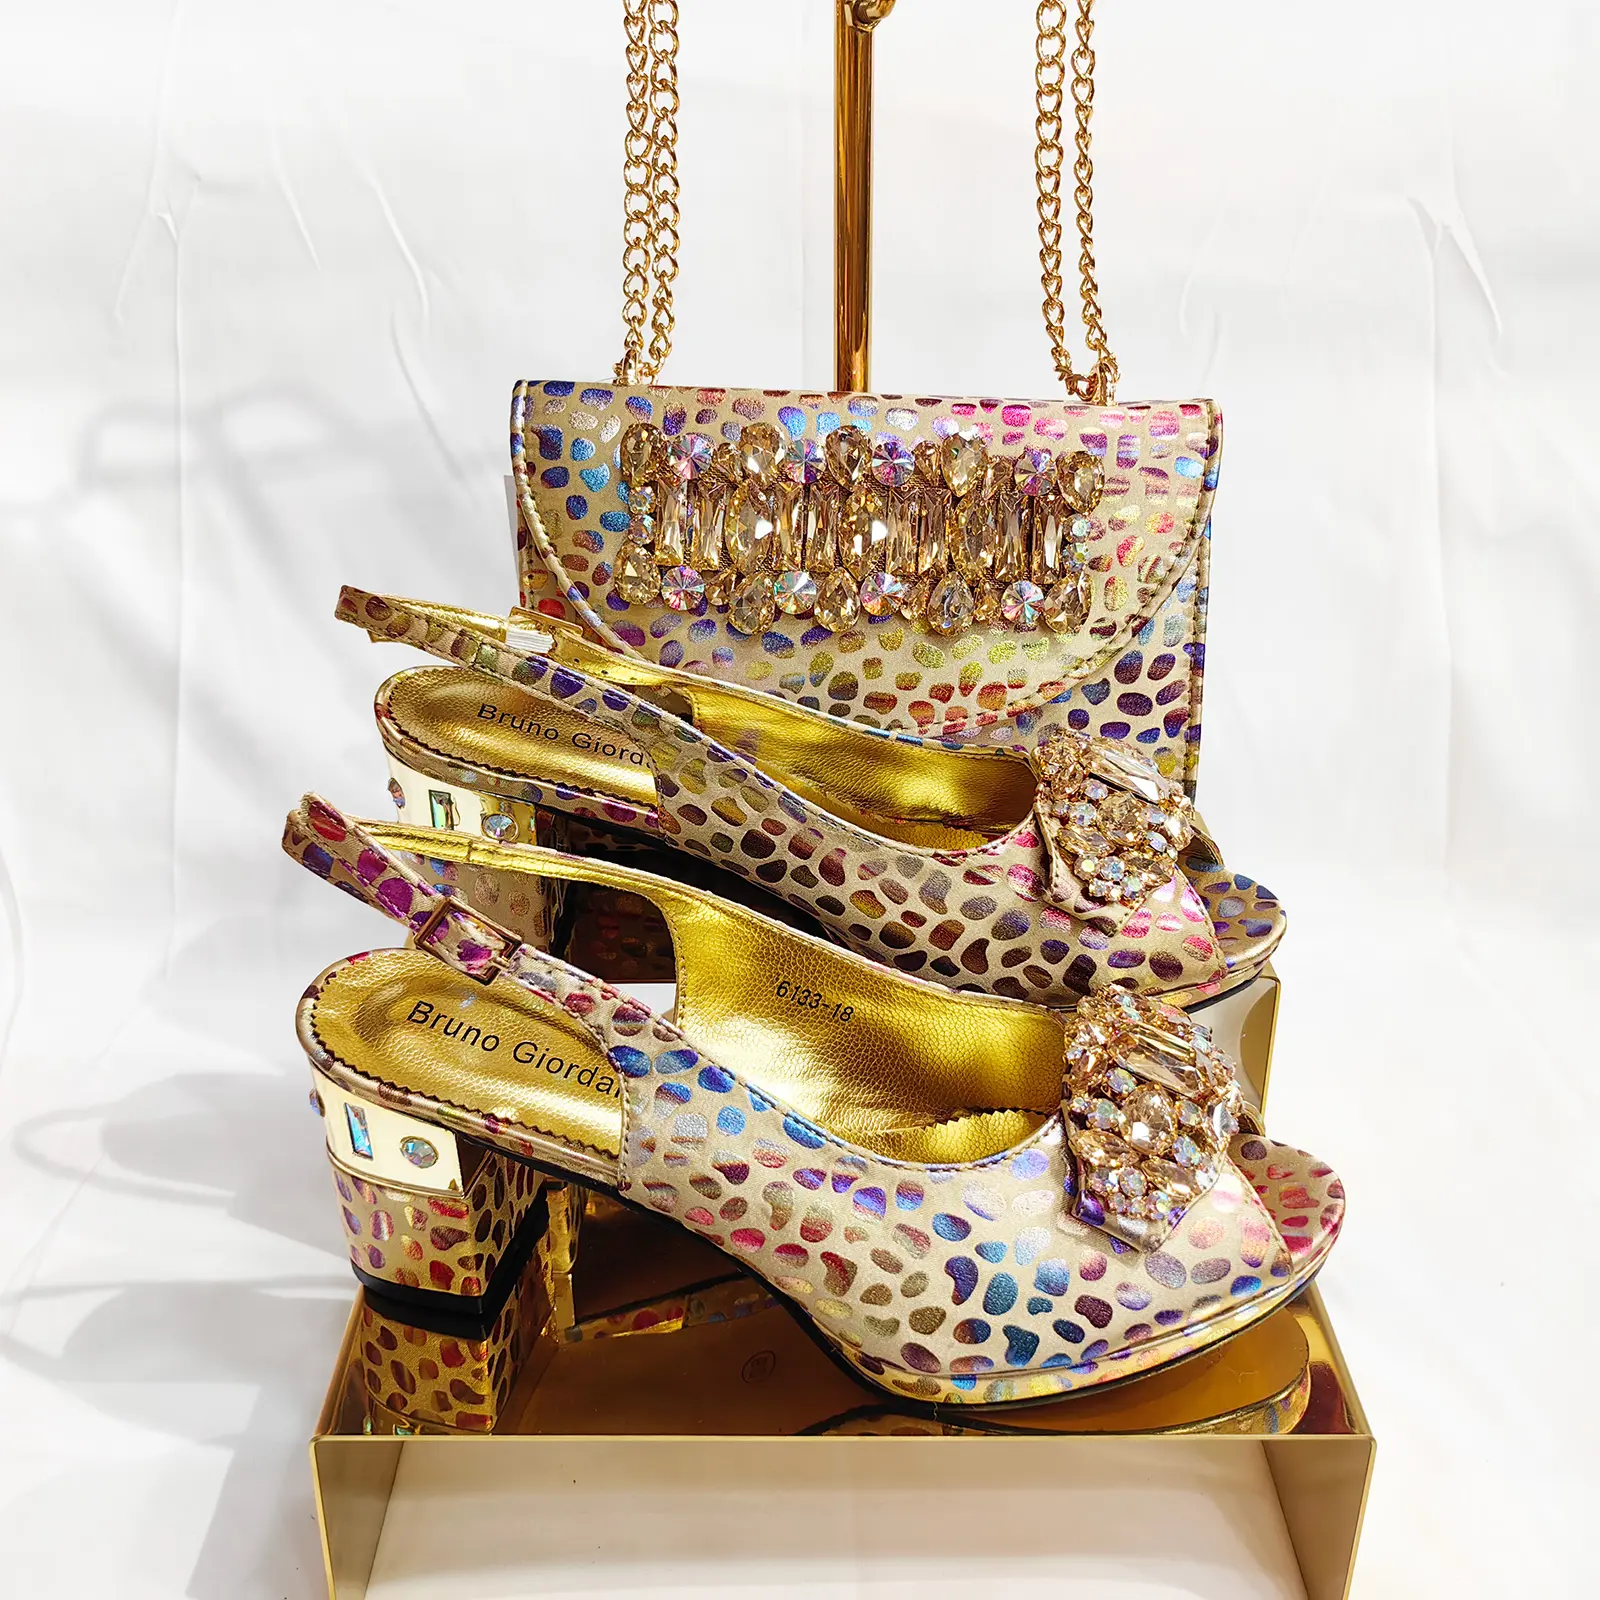 Bruno giordani sepatu hak sedang desain mode gesper berlian imitasi mewah penjualan langsung pabrik MANDIRI DAN set tas